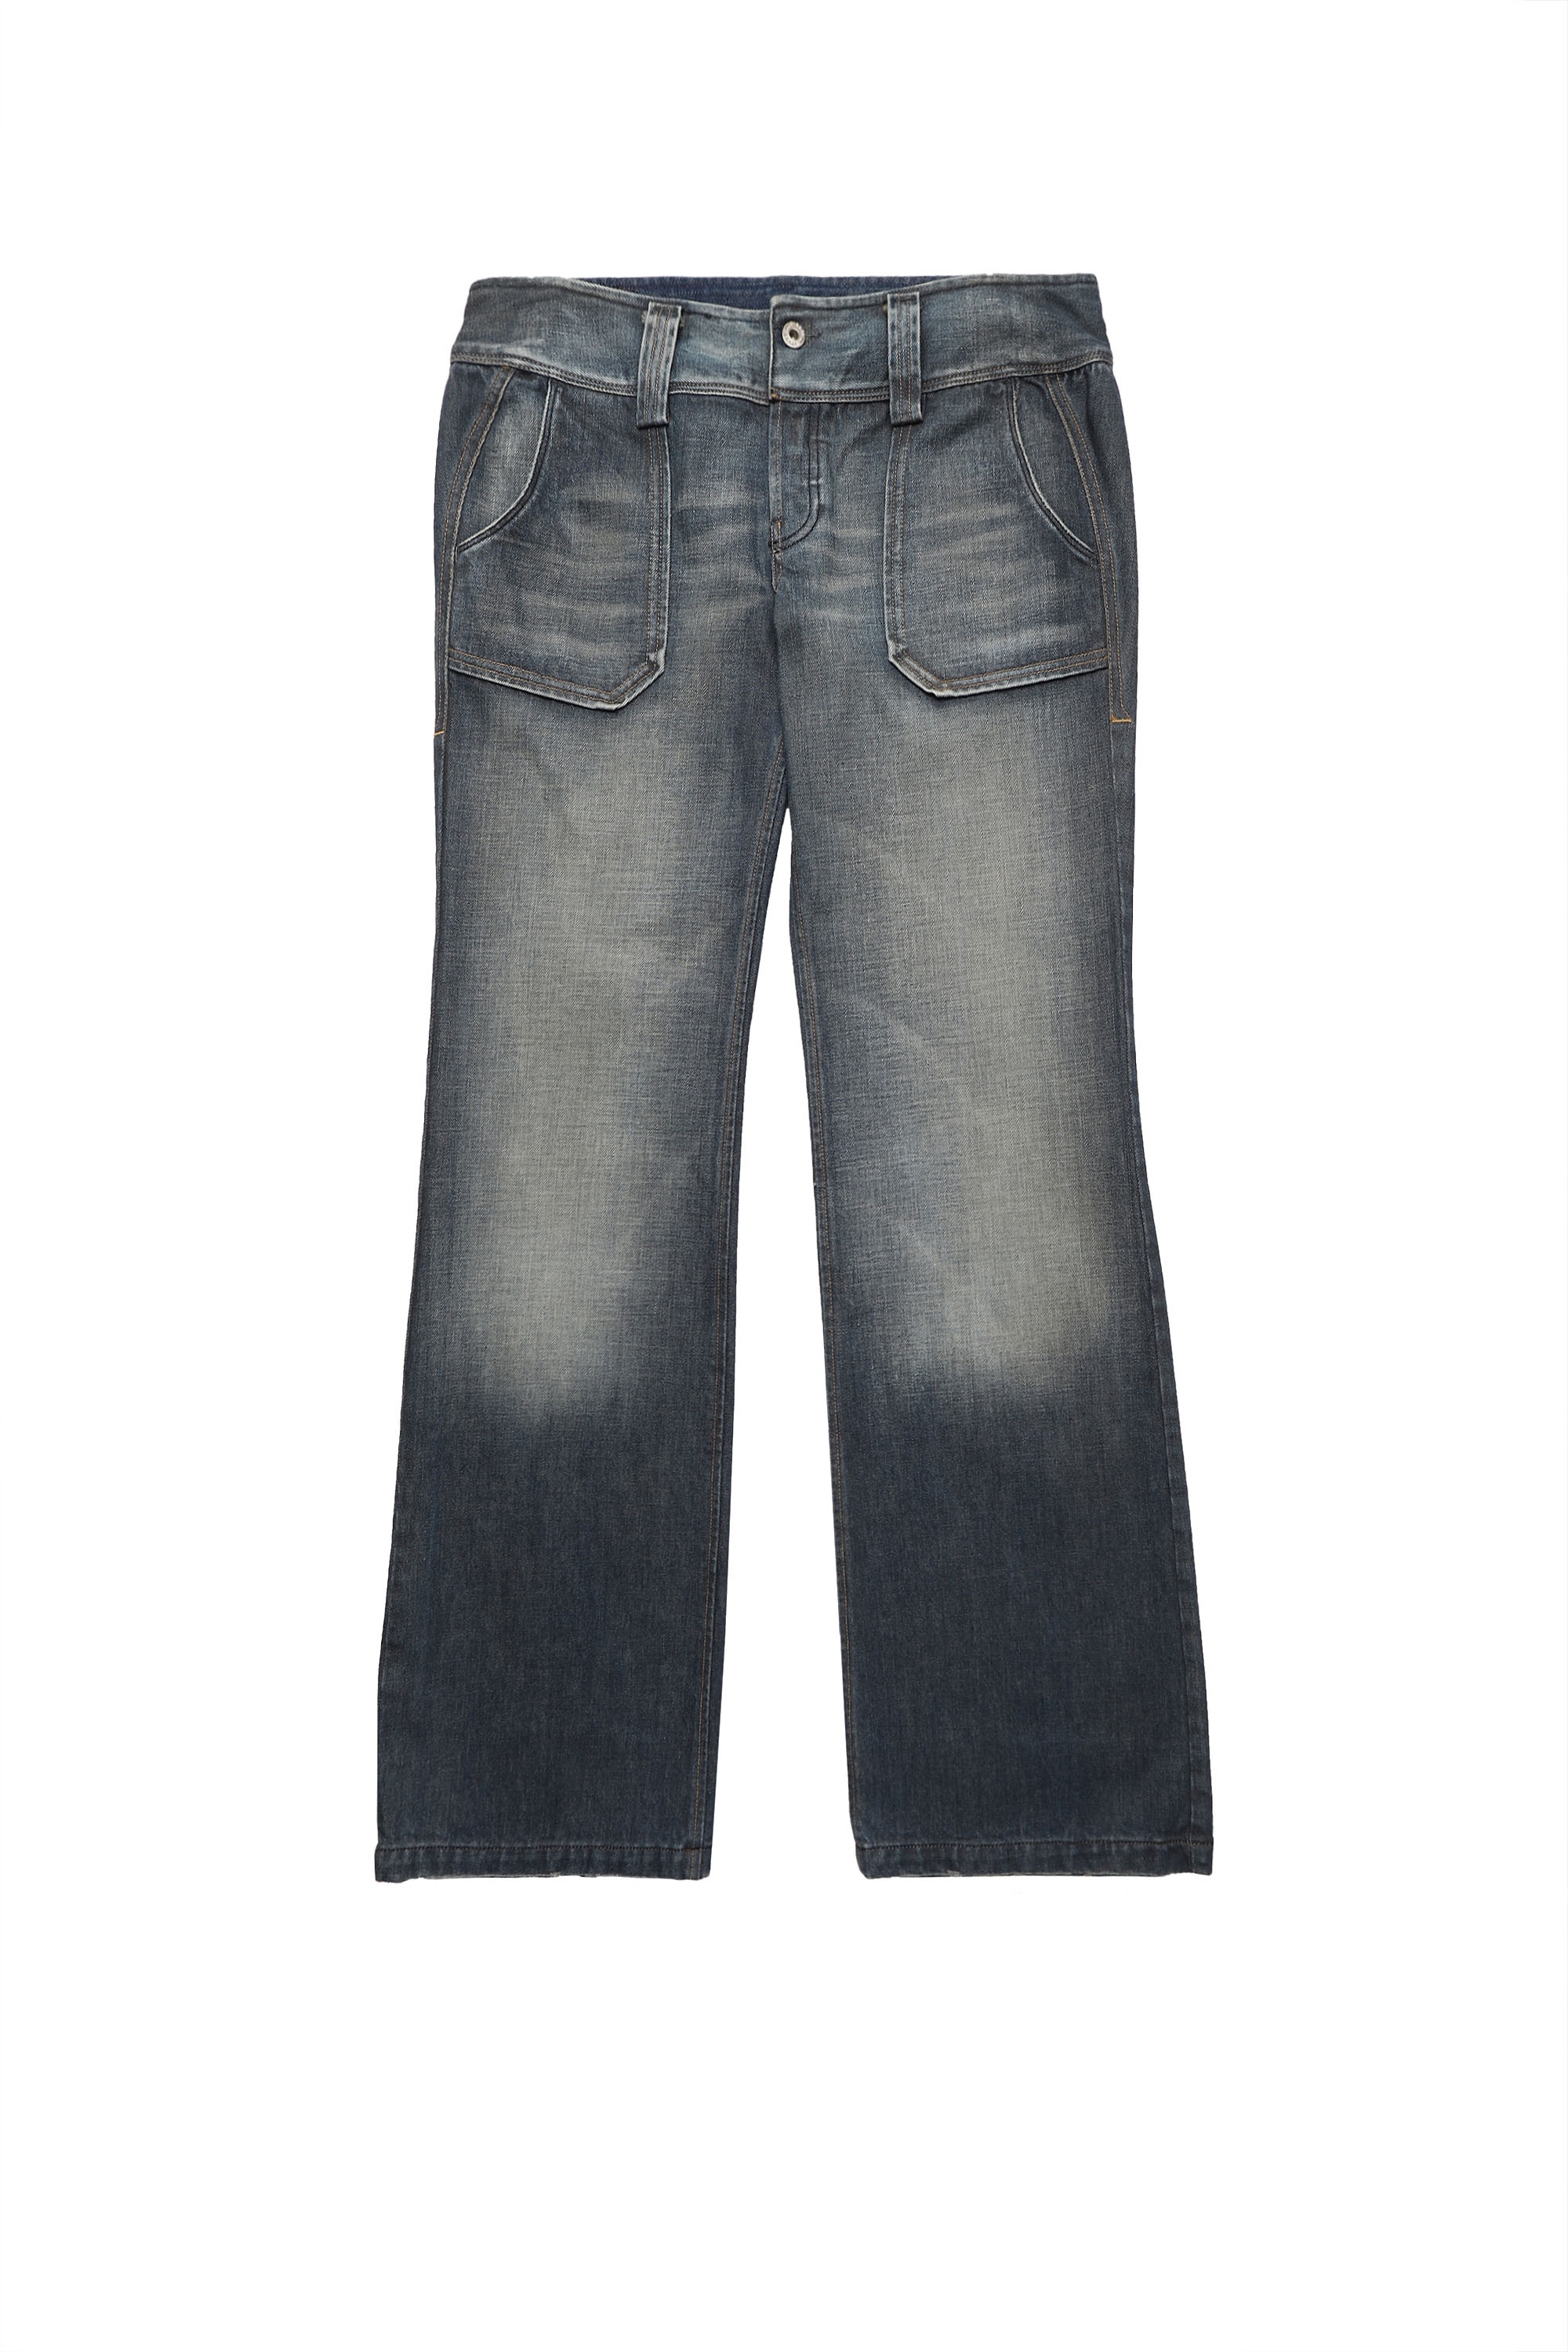 SH DENIM PANT, Dunkelblau - Jeans